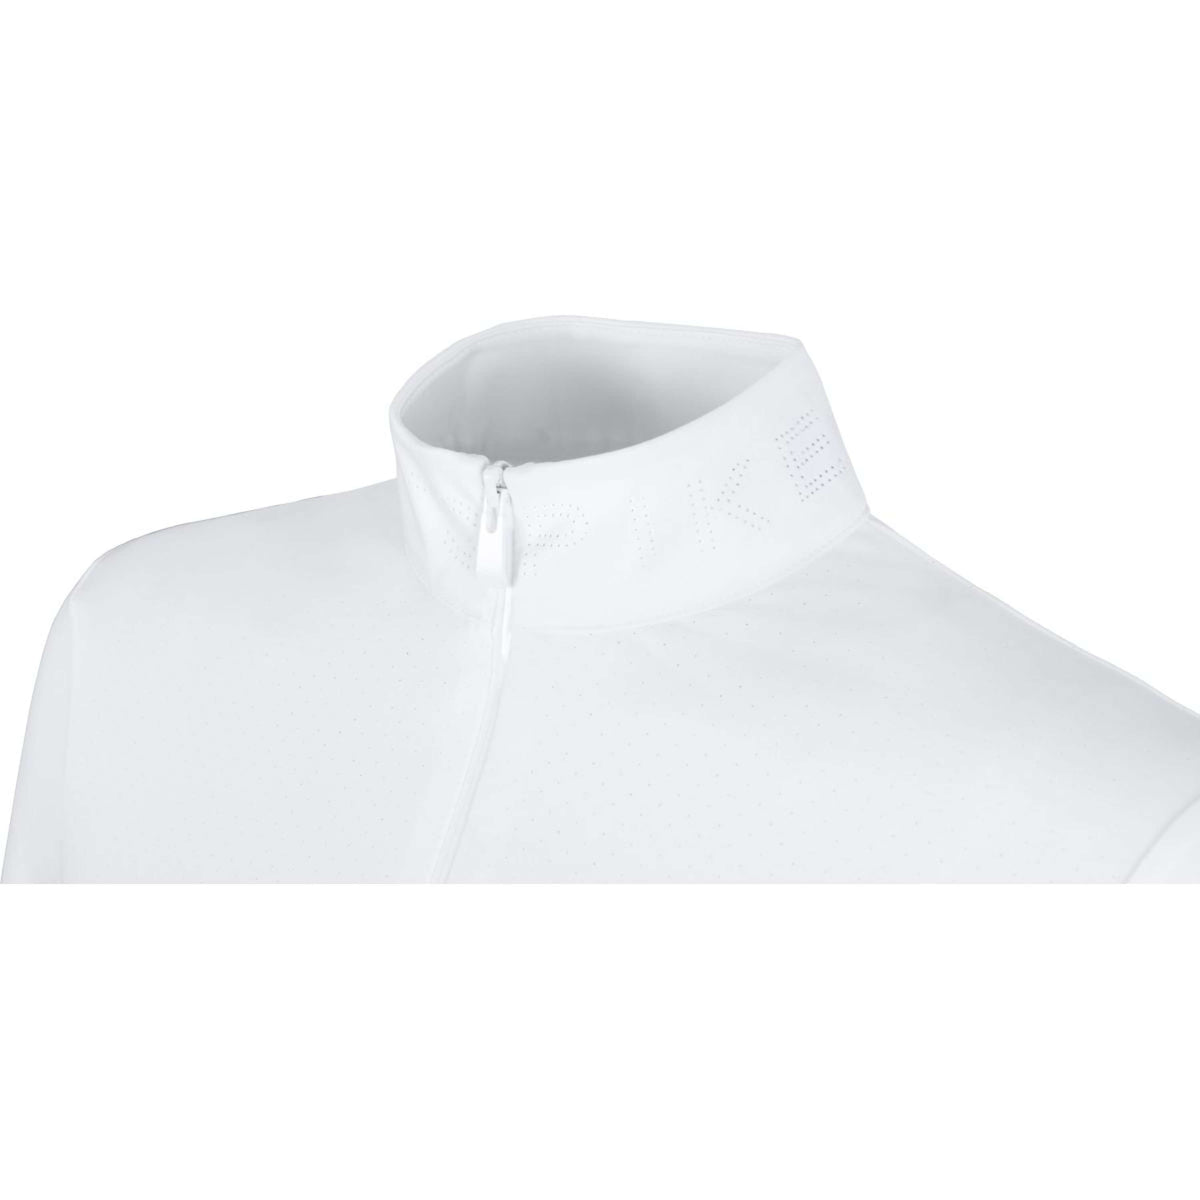 Pikeur Shirt Sports Lasercut Weiß